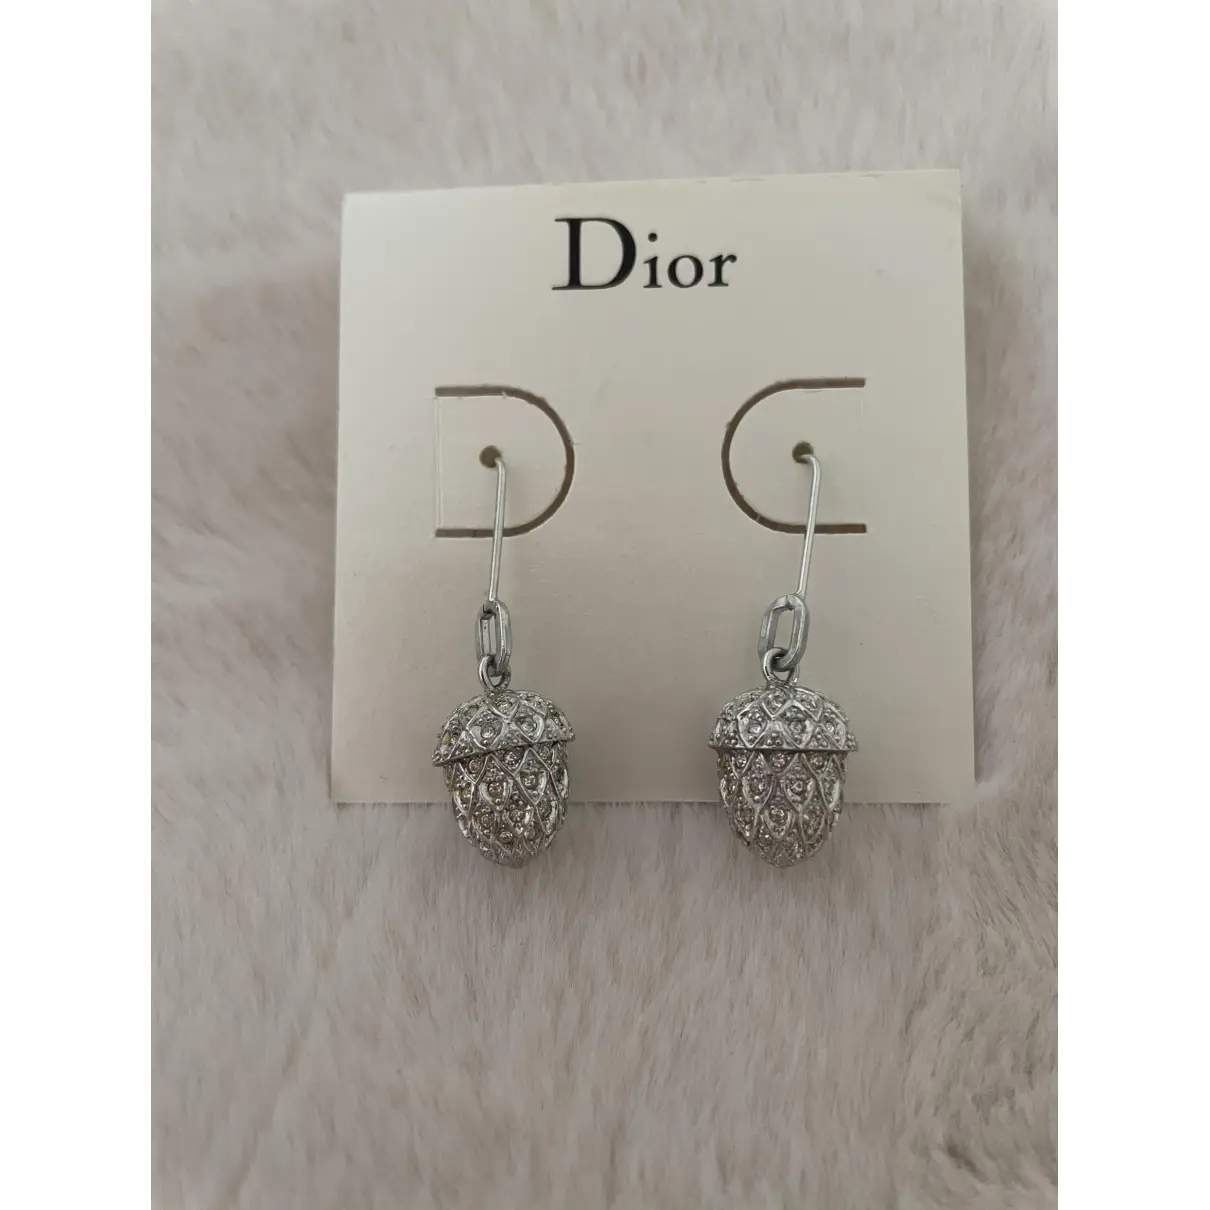 Buy Dior Silver earrings online